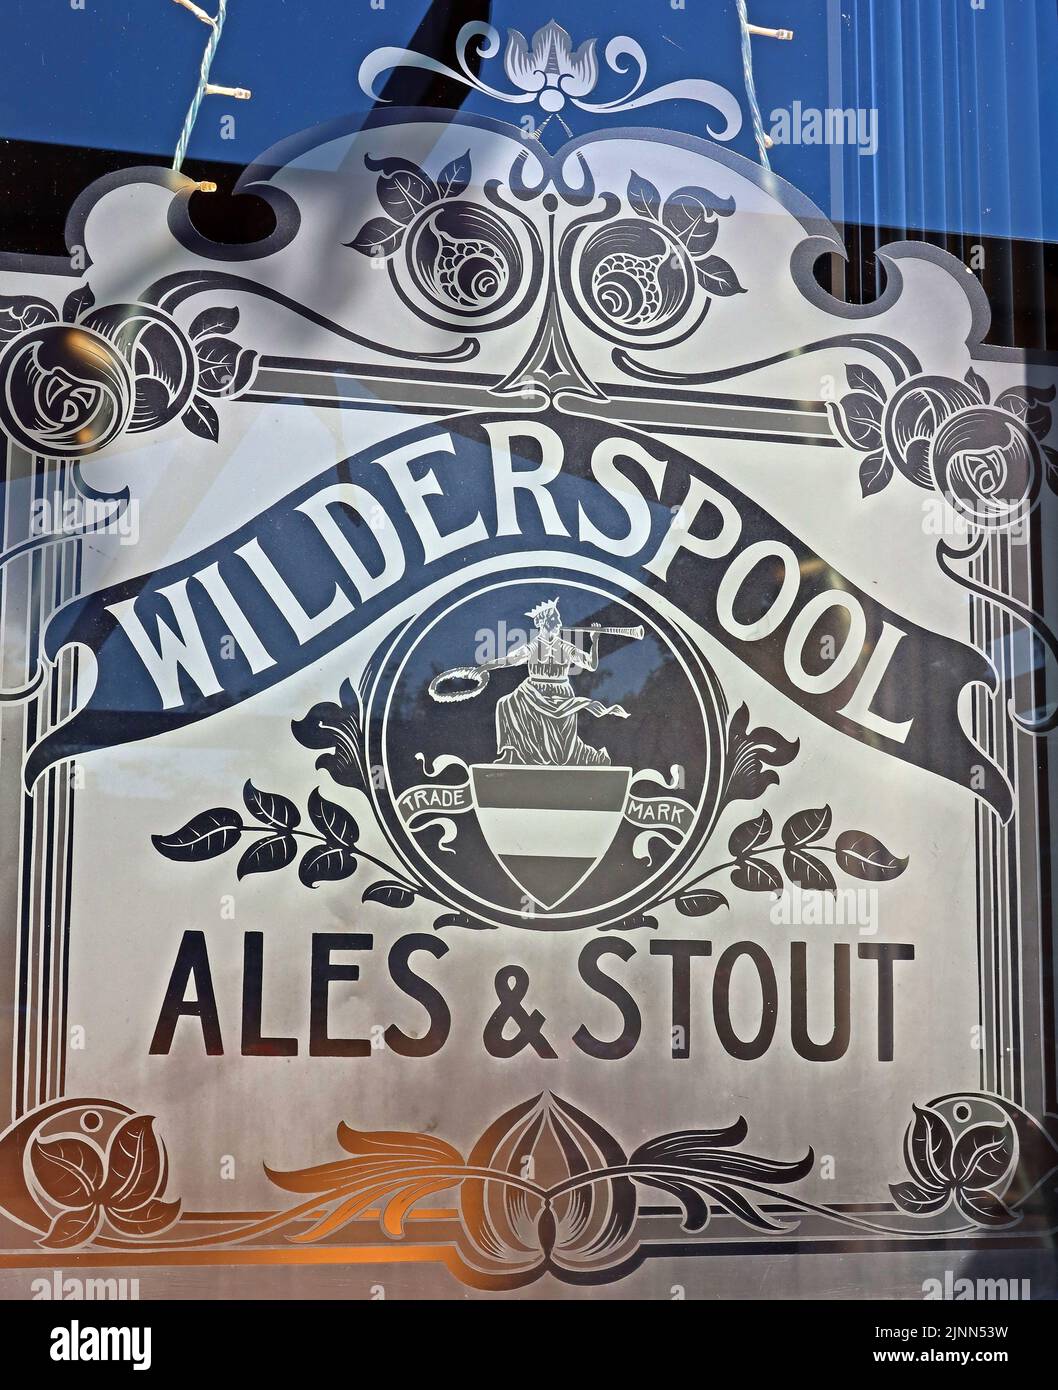 Railway Hotel Pub, Nantwich, geätzt mit Greenalls Wilderspool Ales & Stout und Logo von Warrington, Cheshire, England, Großbritannien Stockfoto